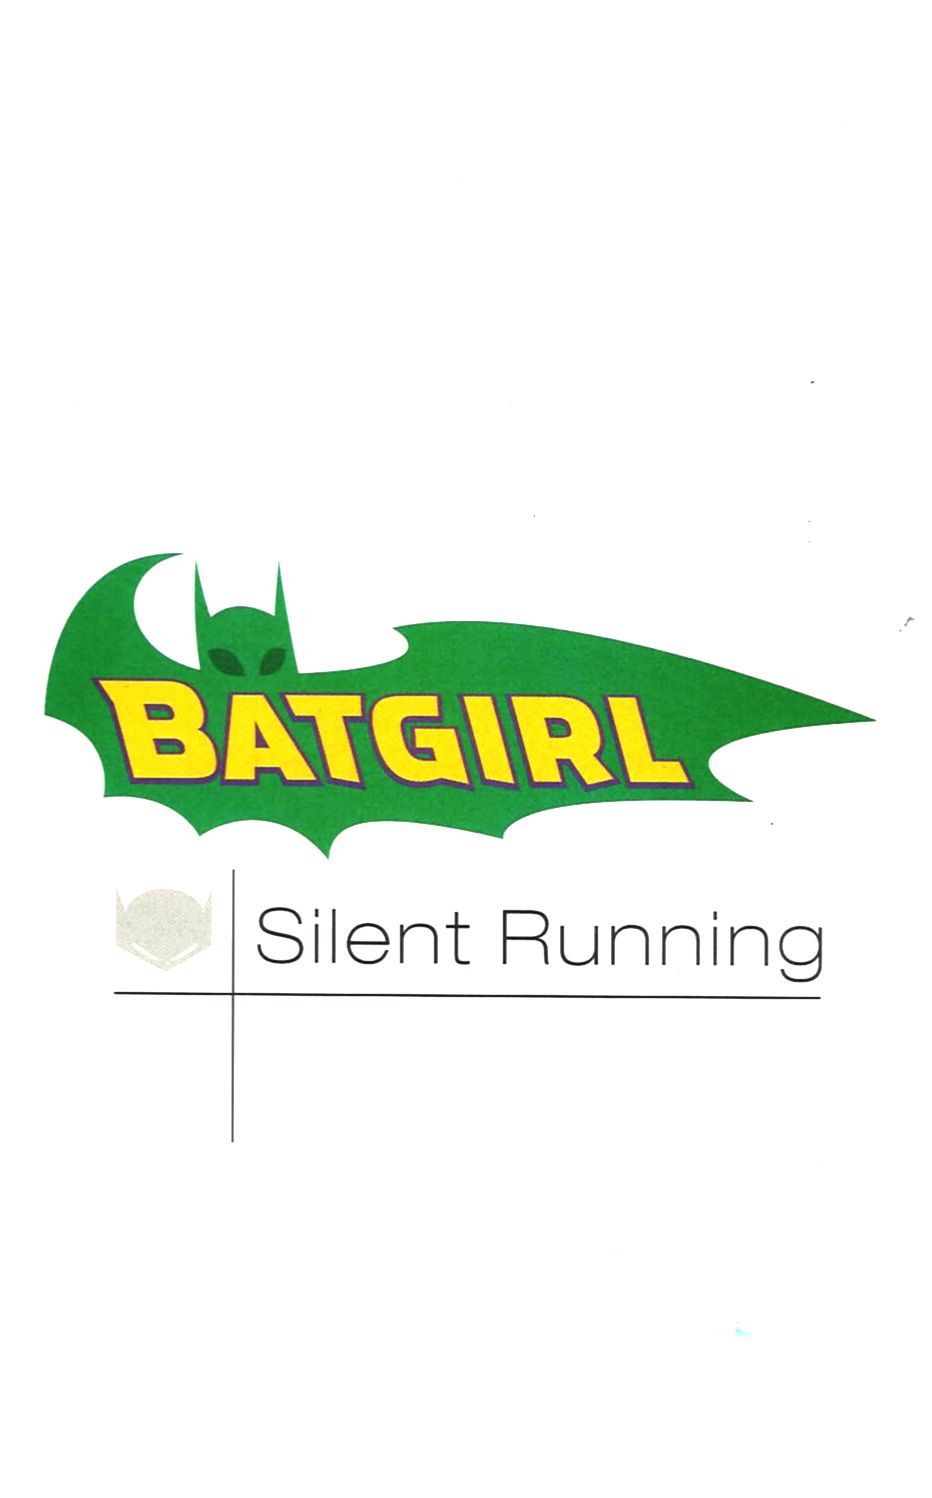 SilentRunning001 Batgirl   Silent Running